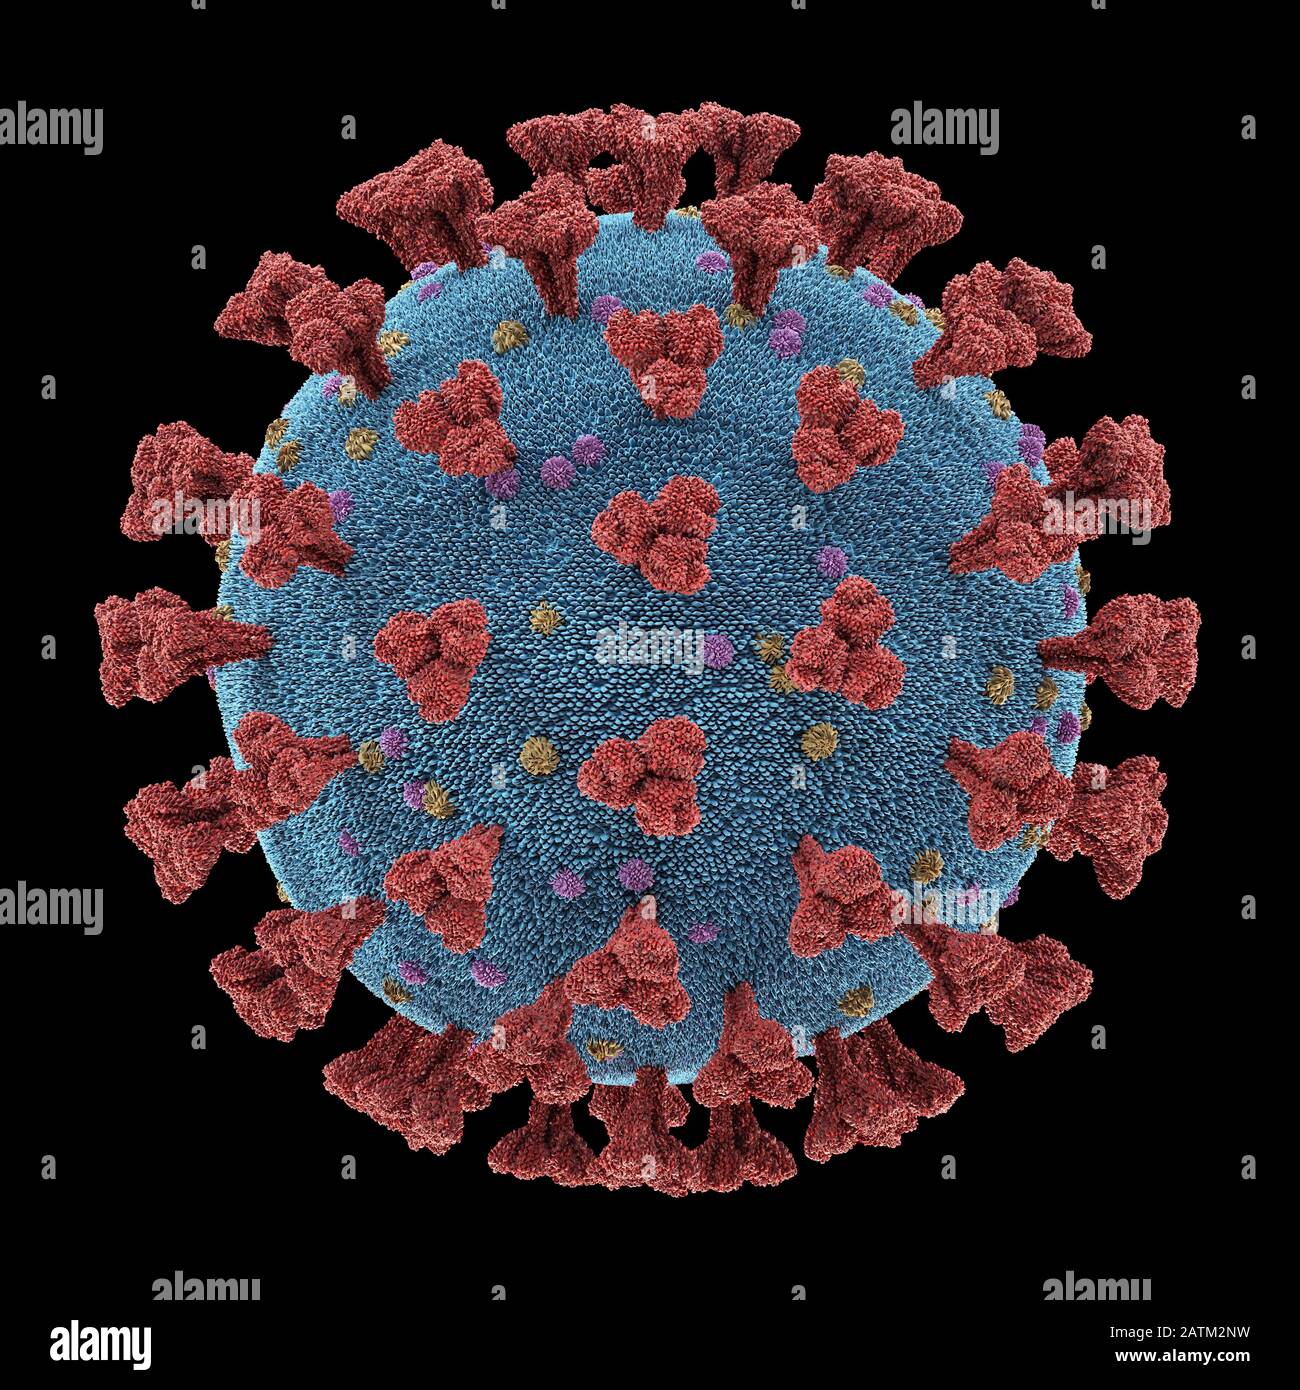 Coronavirus, eine Gruppe von Viren, die bei Säugetieren und Vögeln Krankheiten verursachen. Beim Menschen verursacht das Virus Atemwegsinfektionen. 3D-Illustration, konzeptua Stockfoto